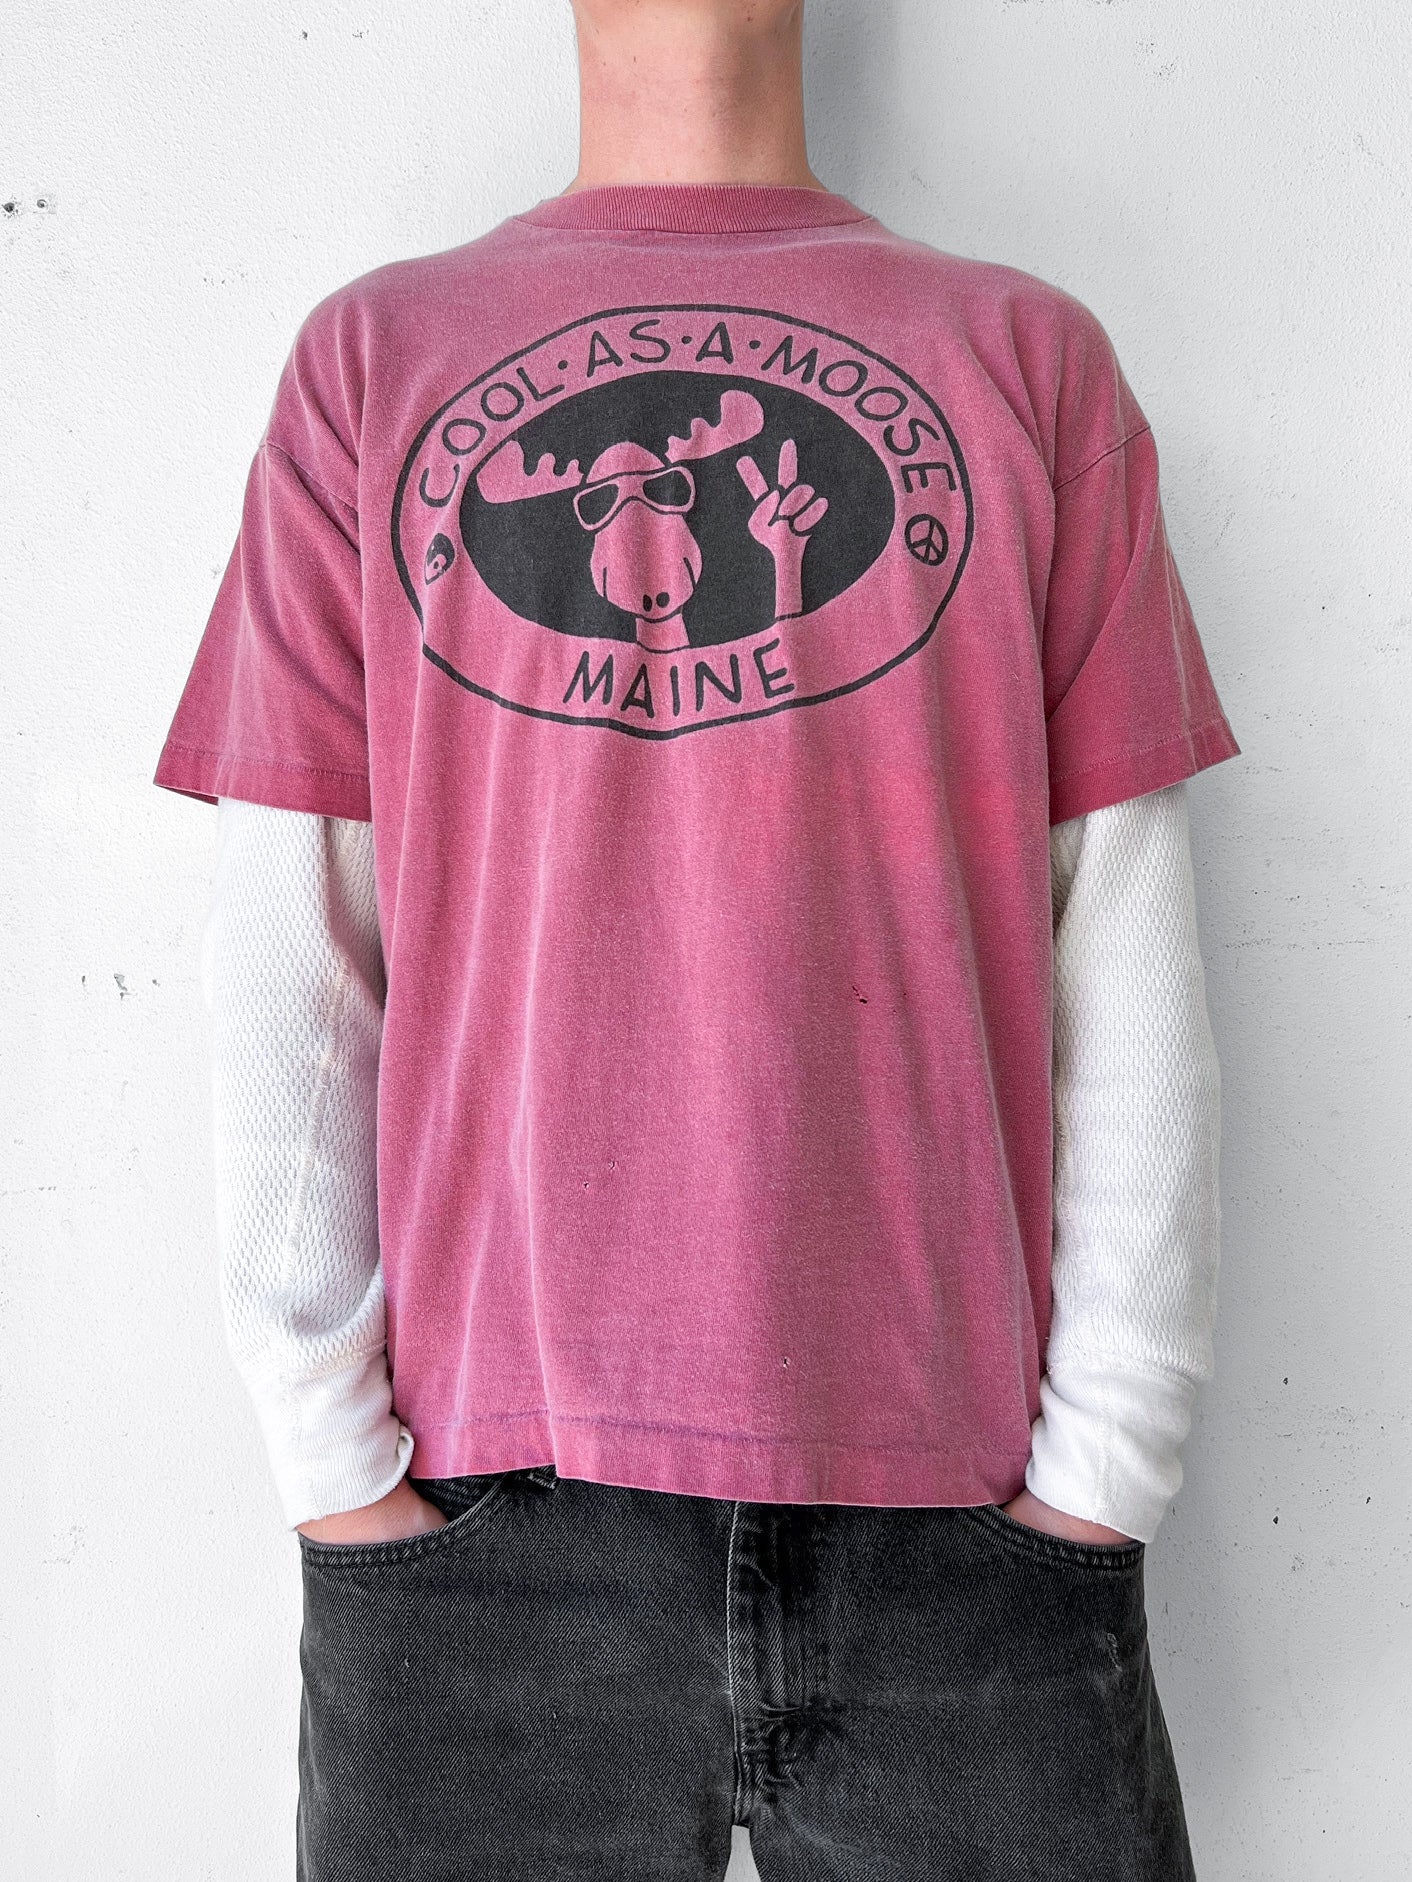 90’s "Cool as a Moose" Maine Art Shirt - XL